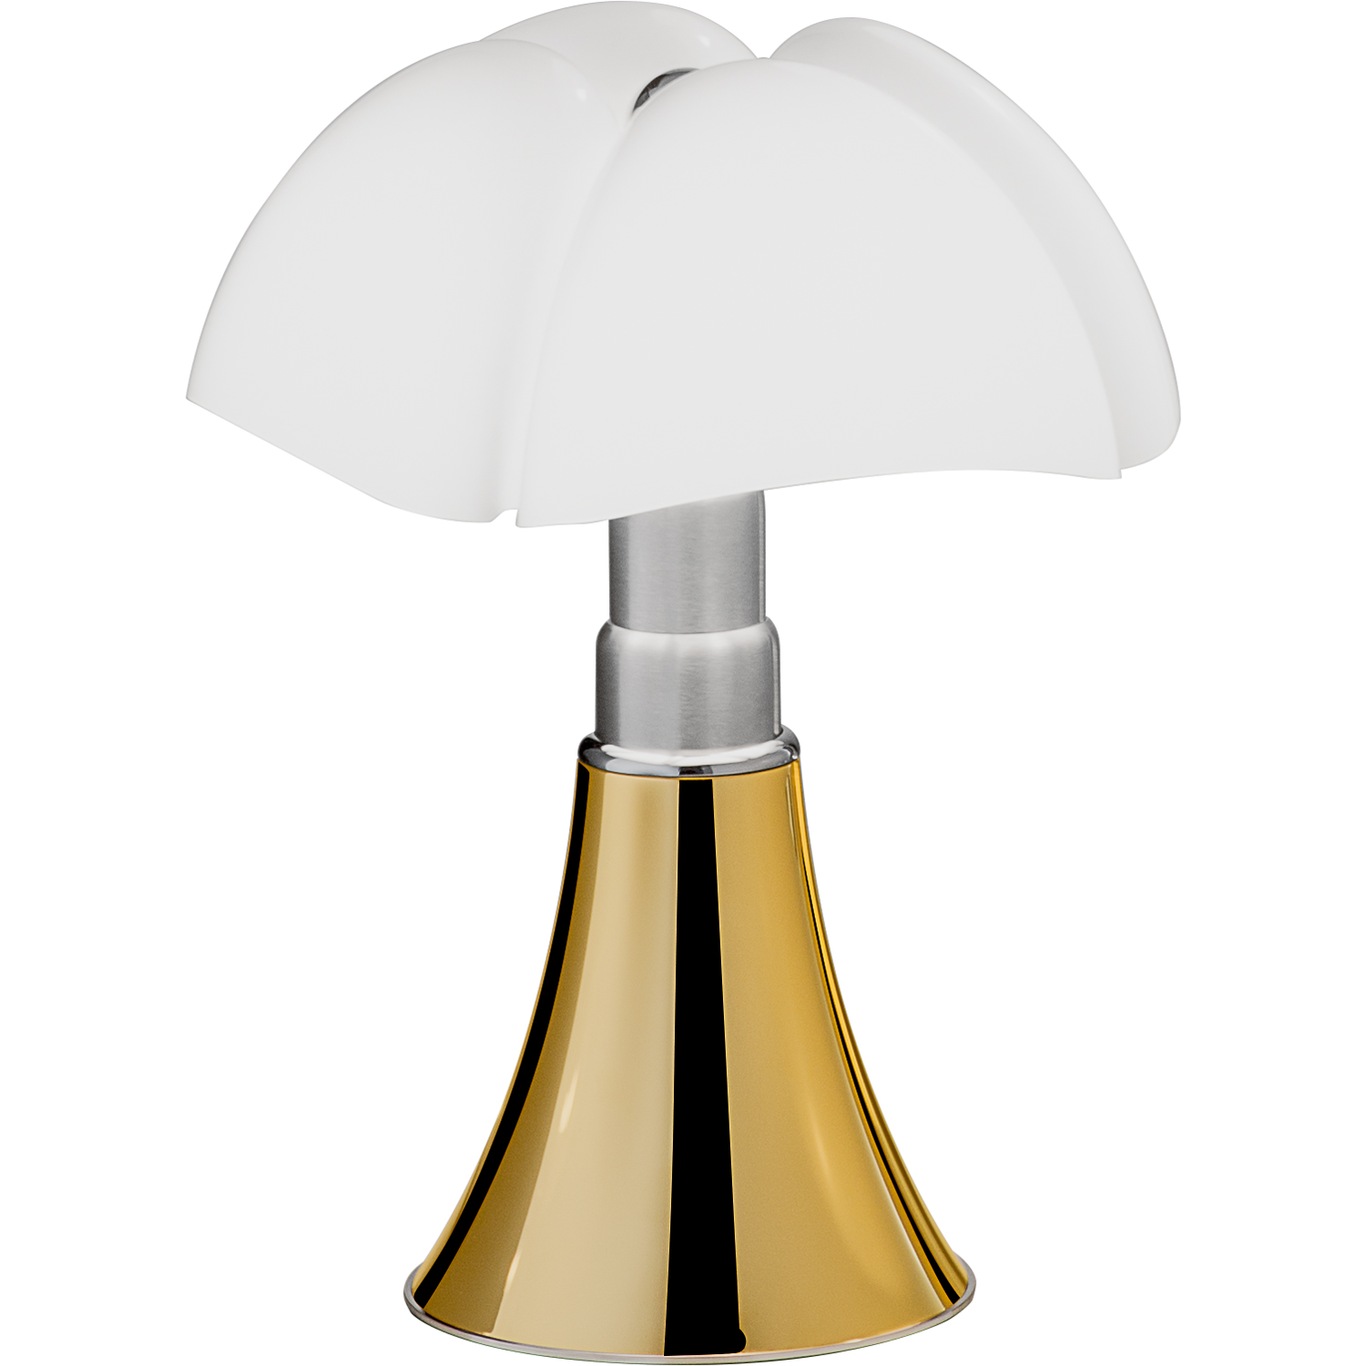 Pipistrello Mini Table Lamp, Golden